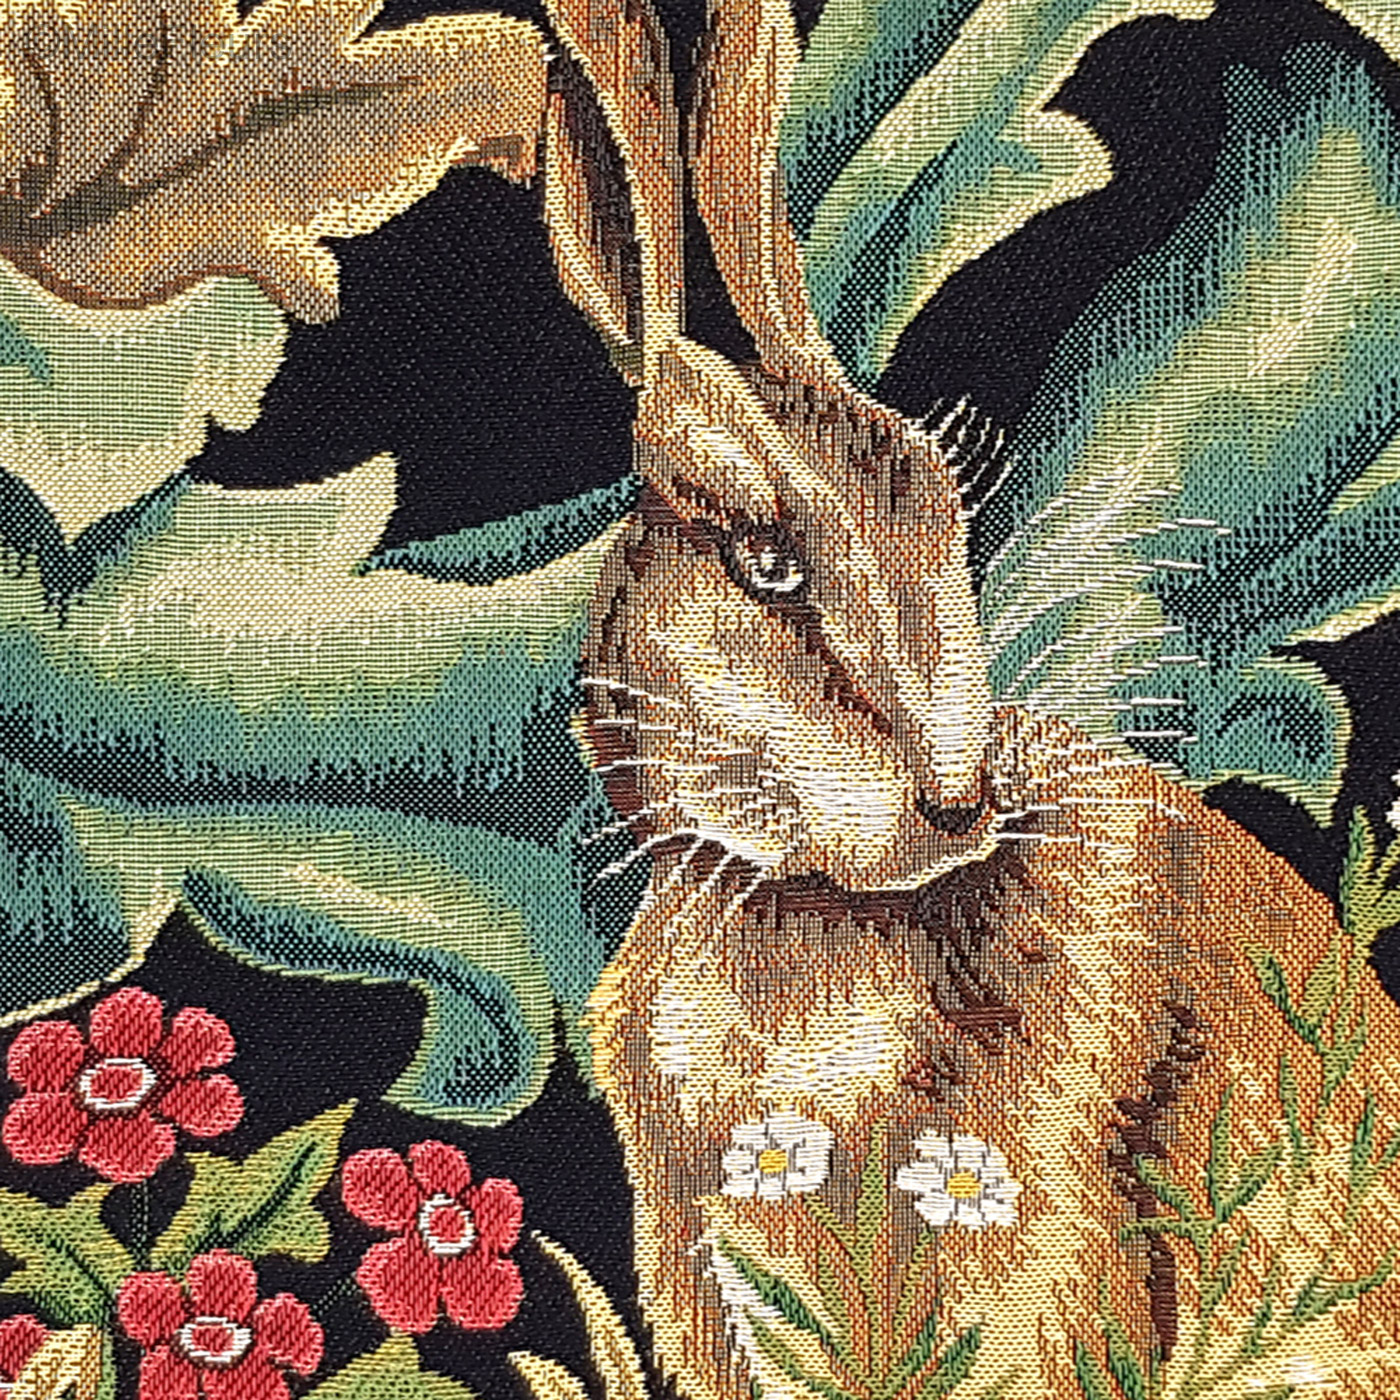 Hare (William Morris) - William Morris & Co - Tapestry cushions - Mille ...